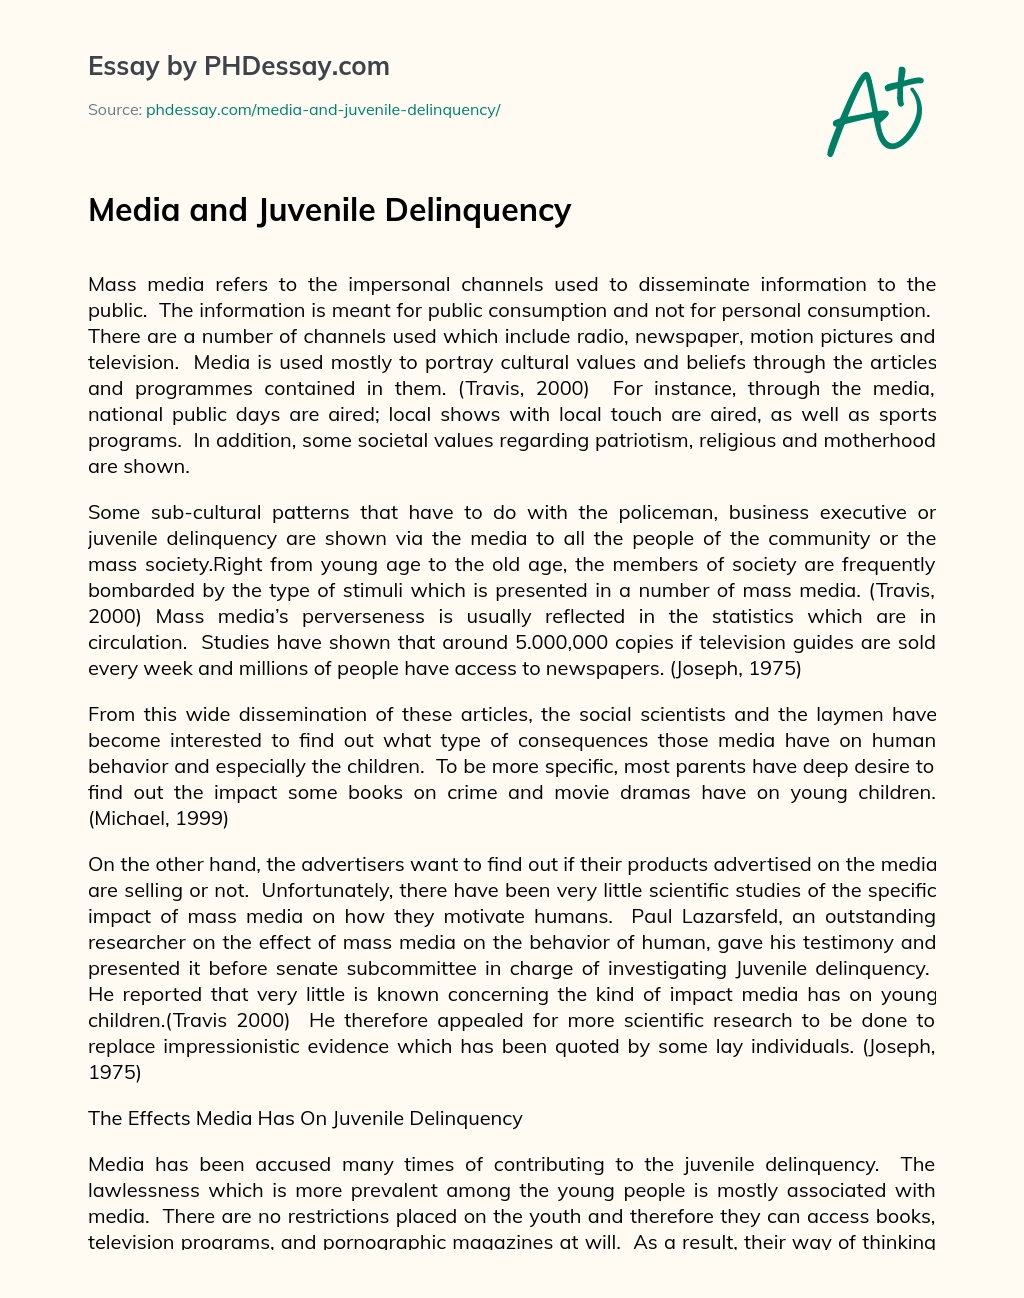 Media and Juvenile Delinquency essay